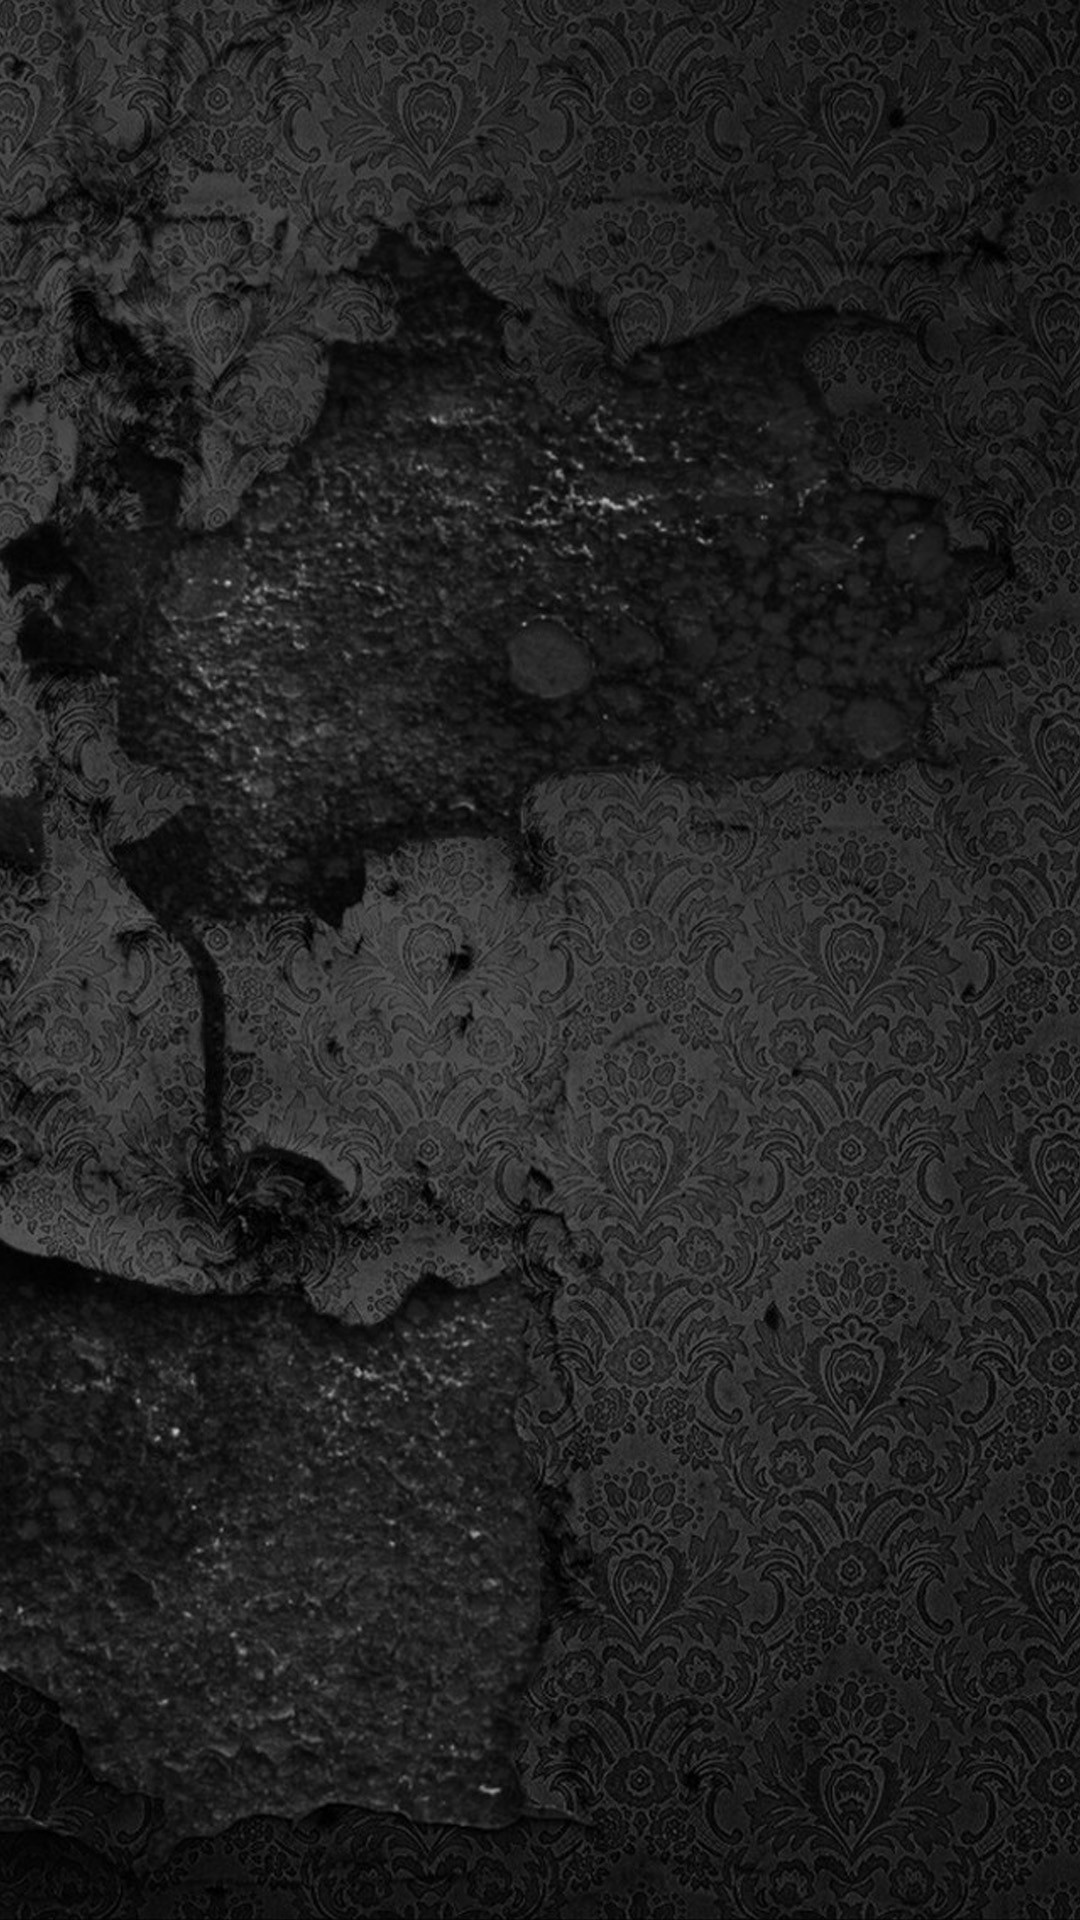 1080x1920 iPhone 6 Plus Wallpaper Dark - WallpaperSafari